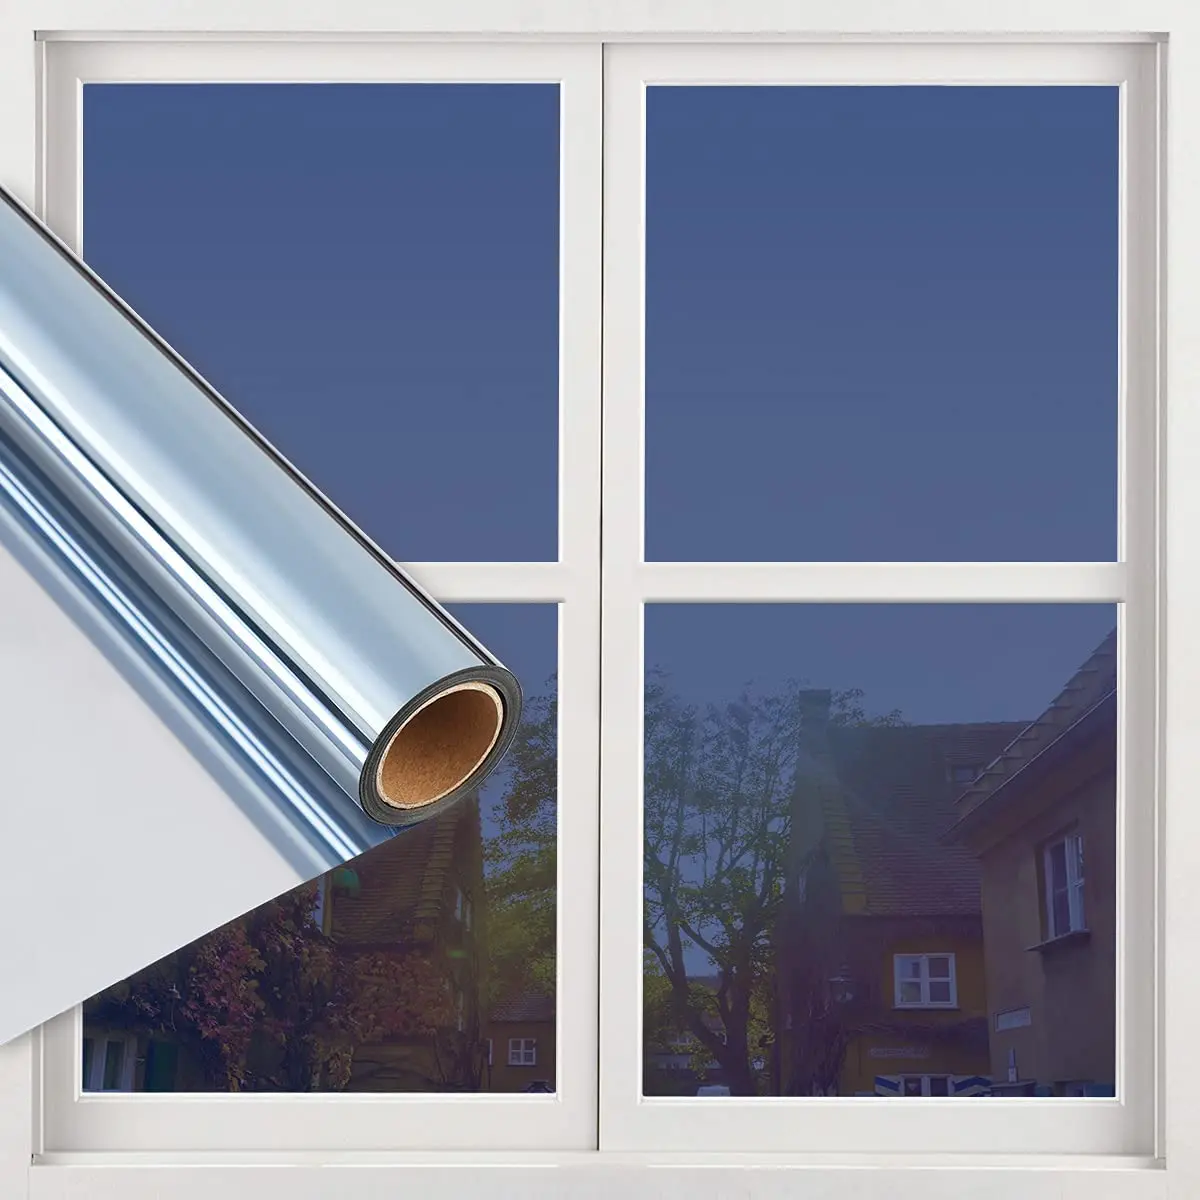 Eine Möglichkeit Spiegel Fenster Privatsphäre Film Tagsüber Anti UV Sonne Blockieren Wärme Control Reflektierende Fenster Farbton für Home Office Wohnzimmer zimmer